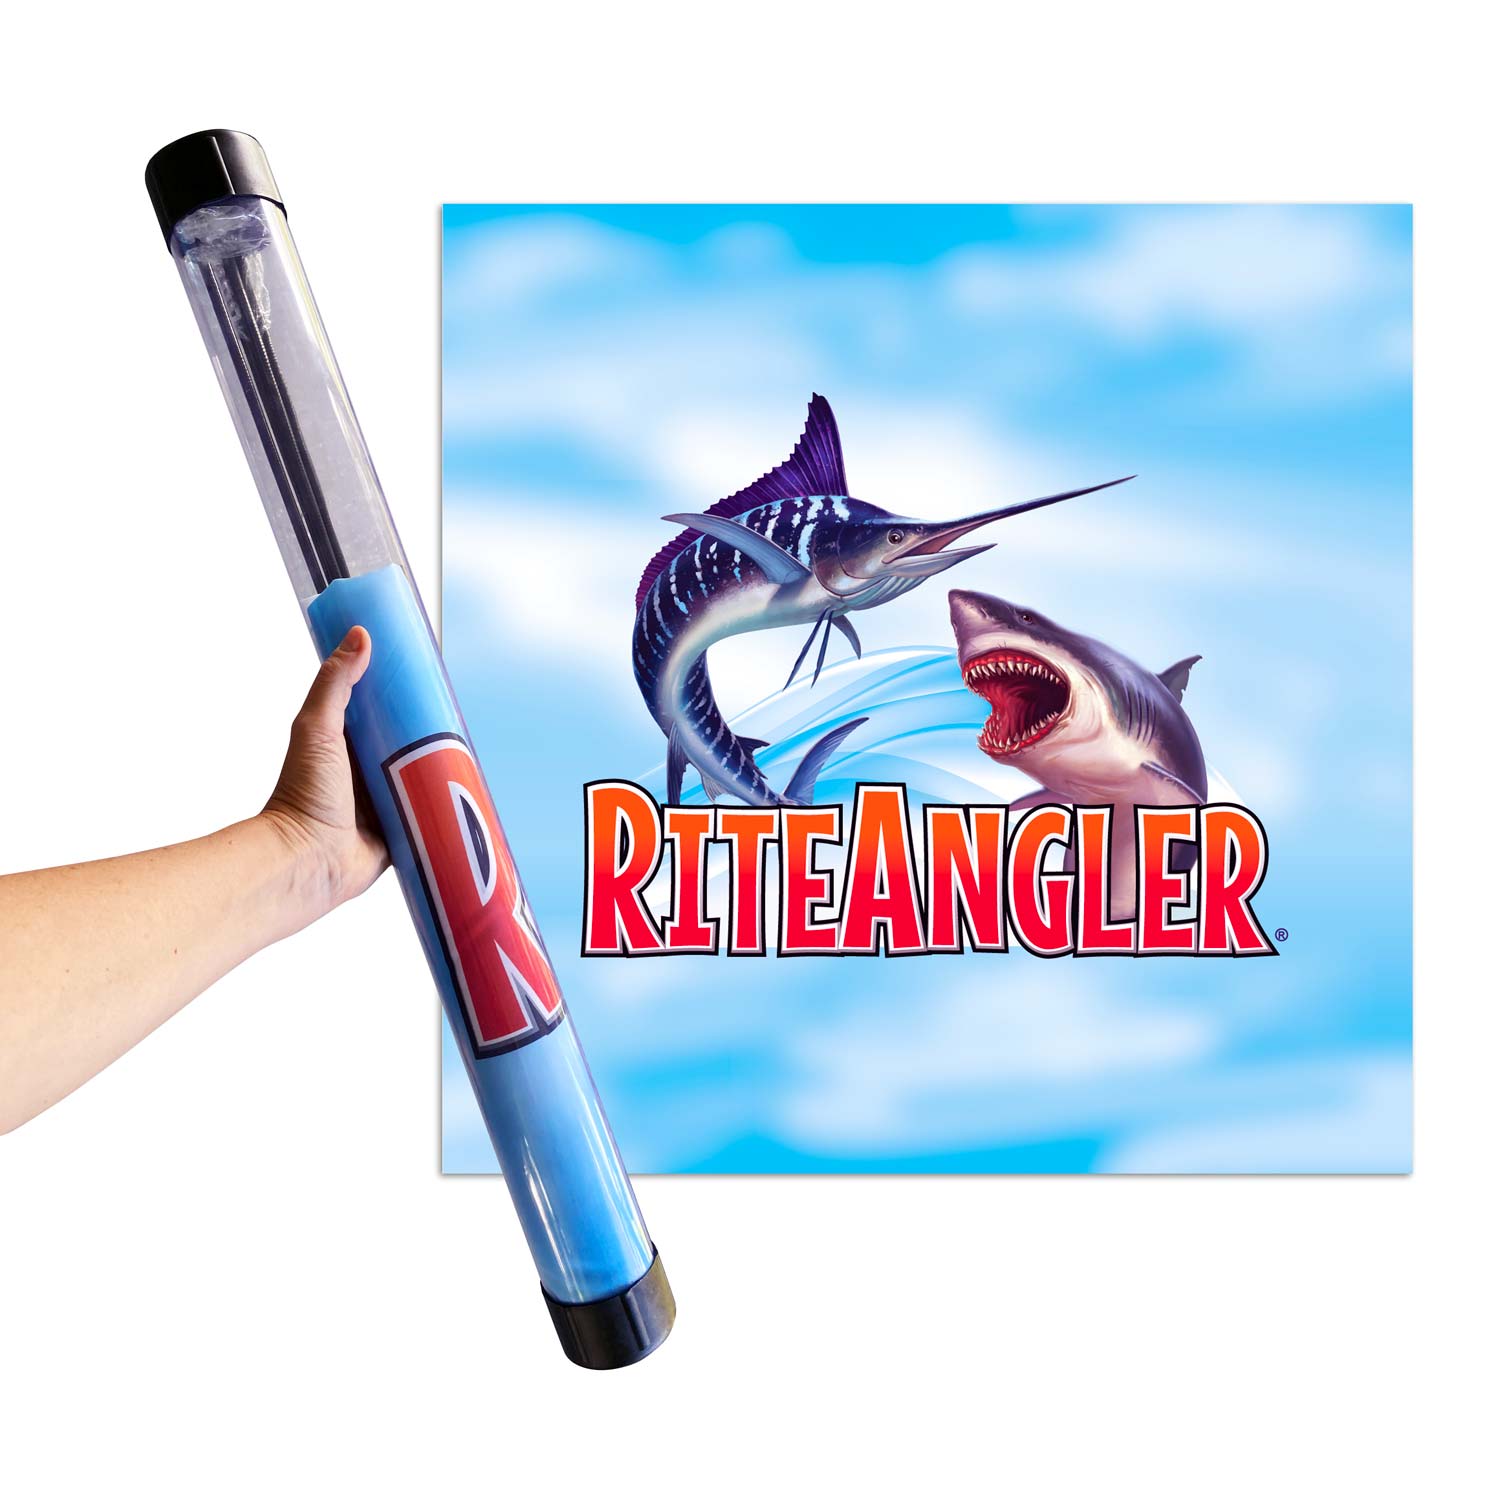 Fishing Kite – Rite Angler